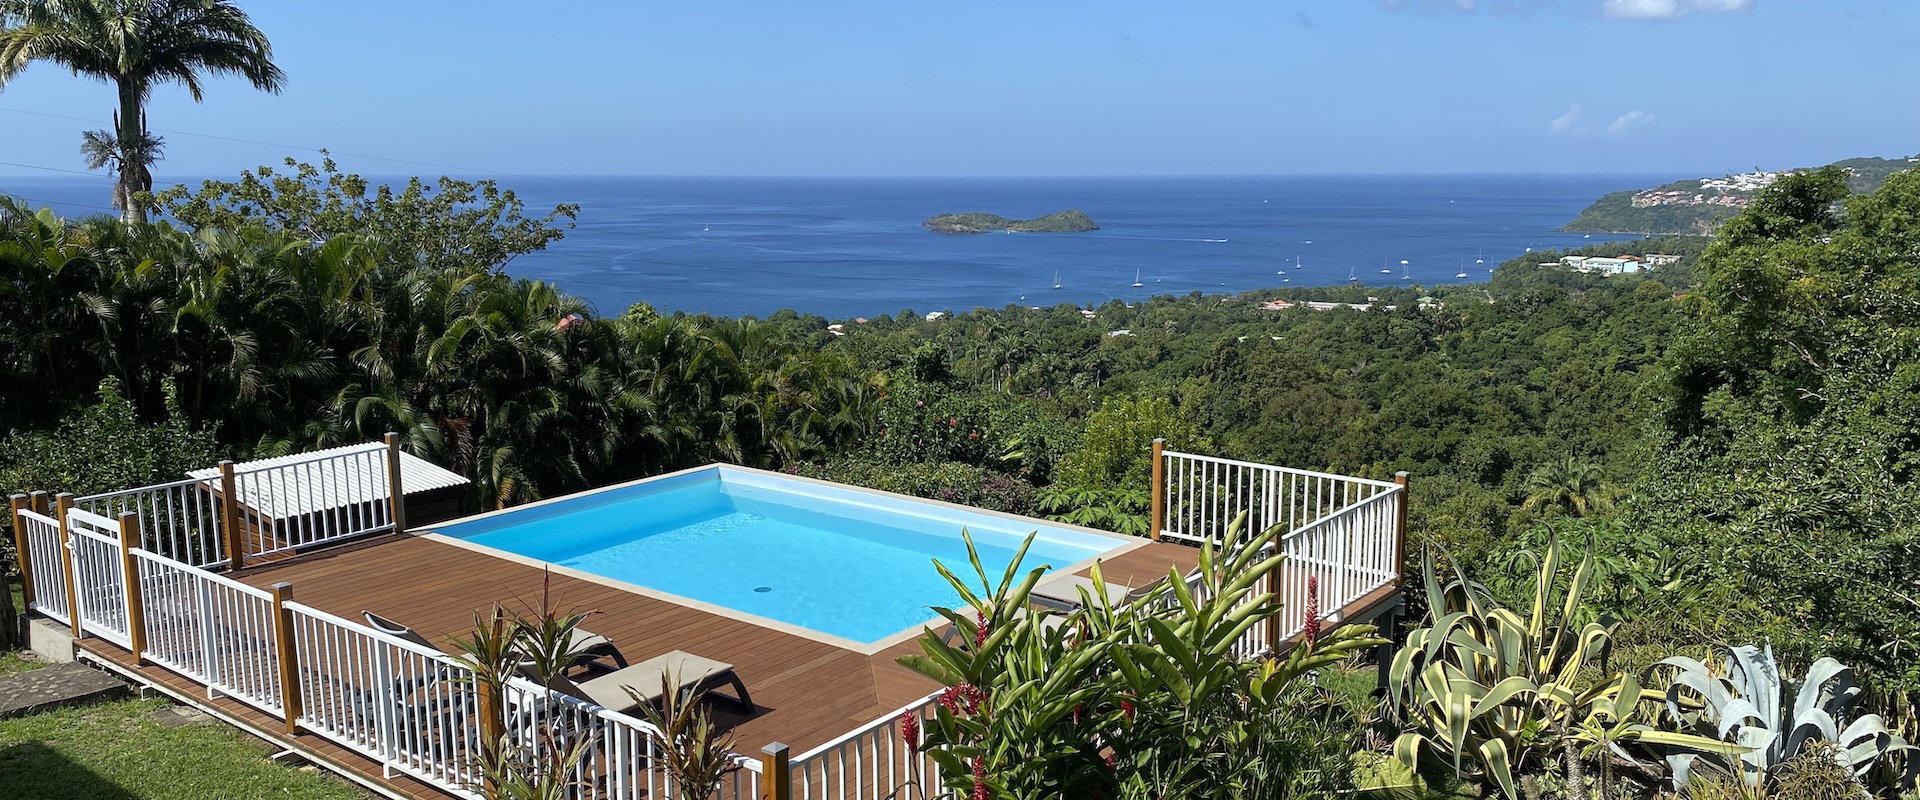 Détente - villa vacances Guadeloupe